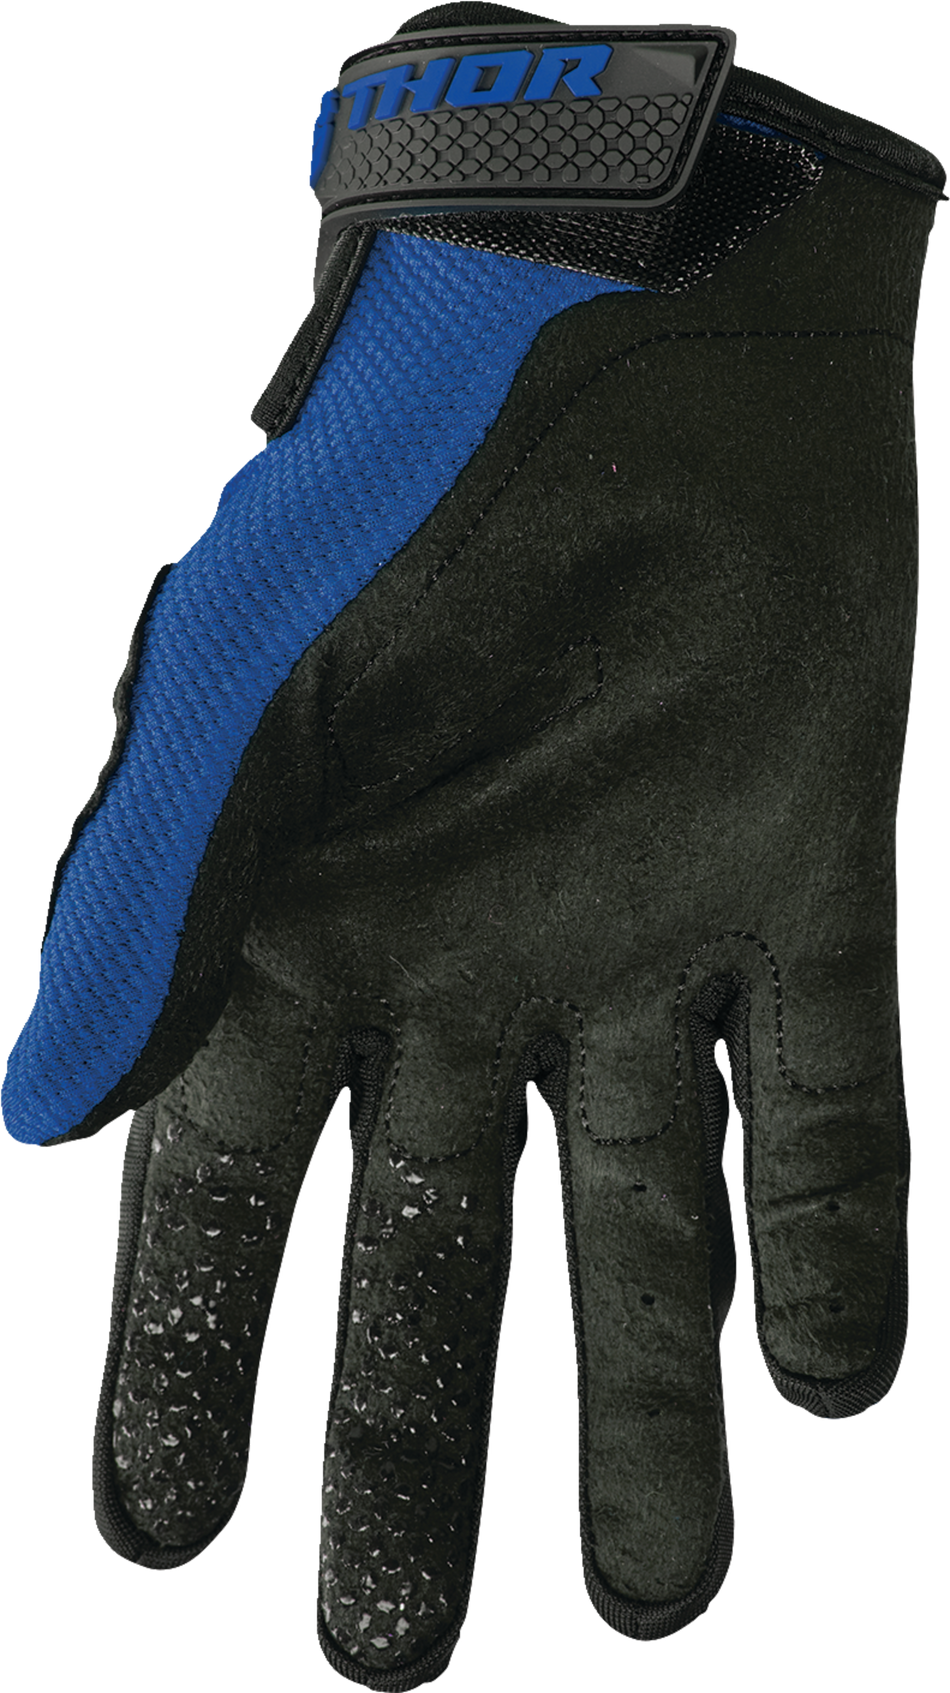 THOR Sector Gloves - Navy/White - Medium 3330-7263